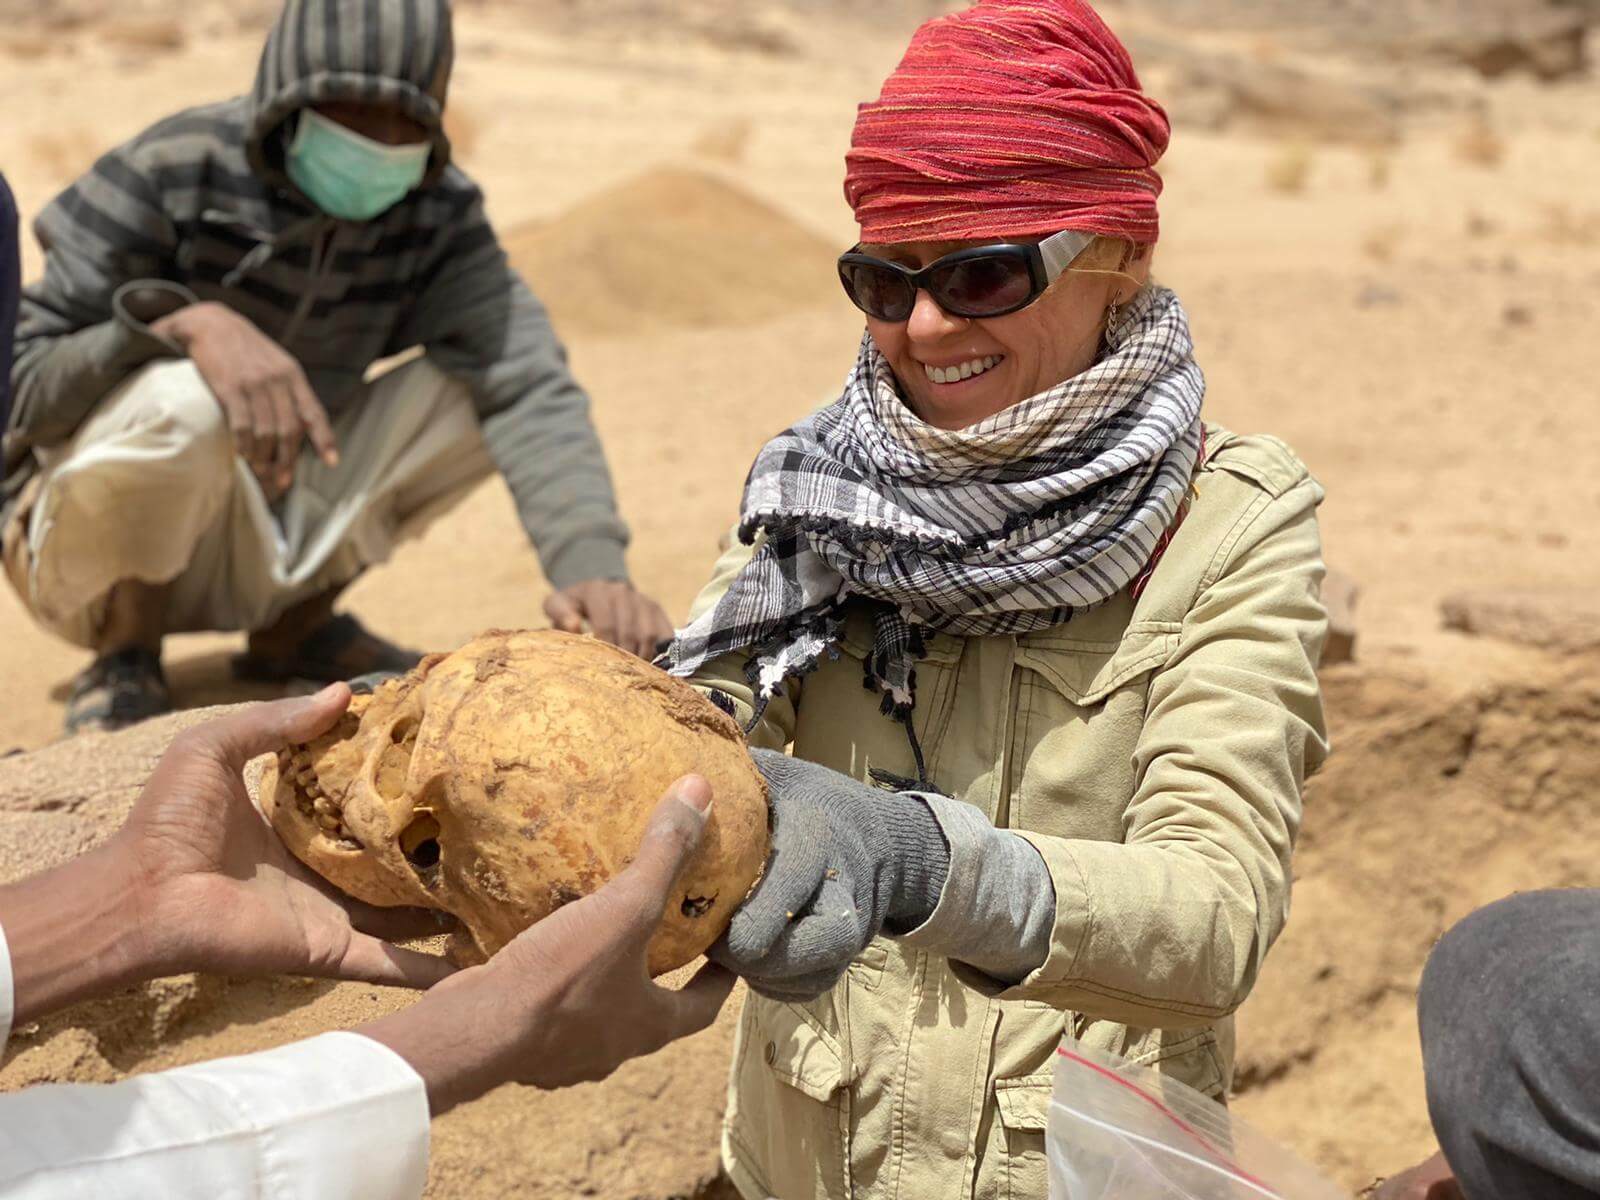 Fotografia: antropolożka w czerwonej chuście na głowie podaje komuś spoza kadru ludzką czaszkę odkrytą na pustyni.